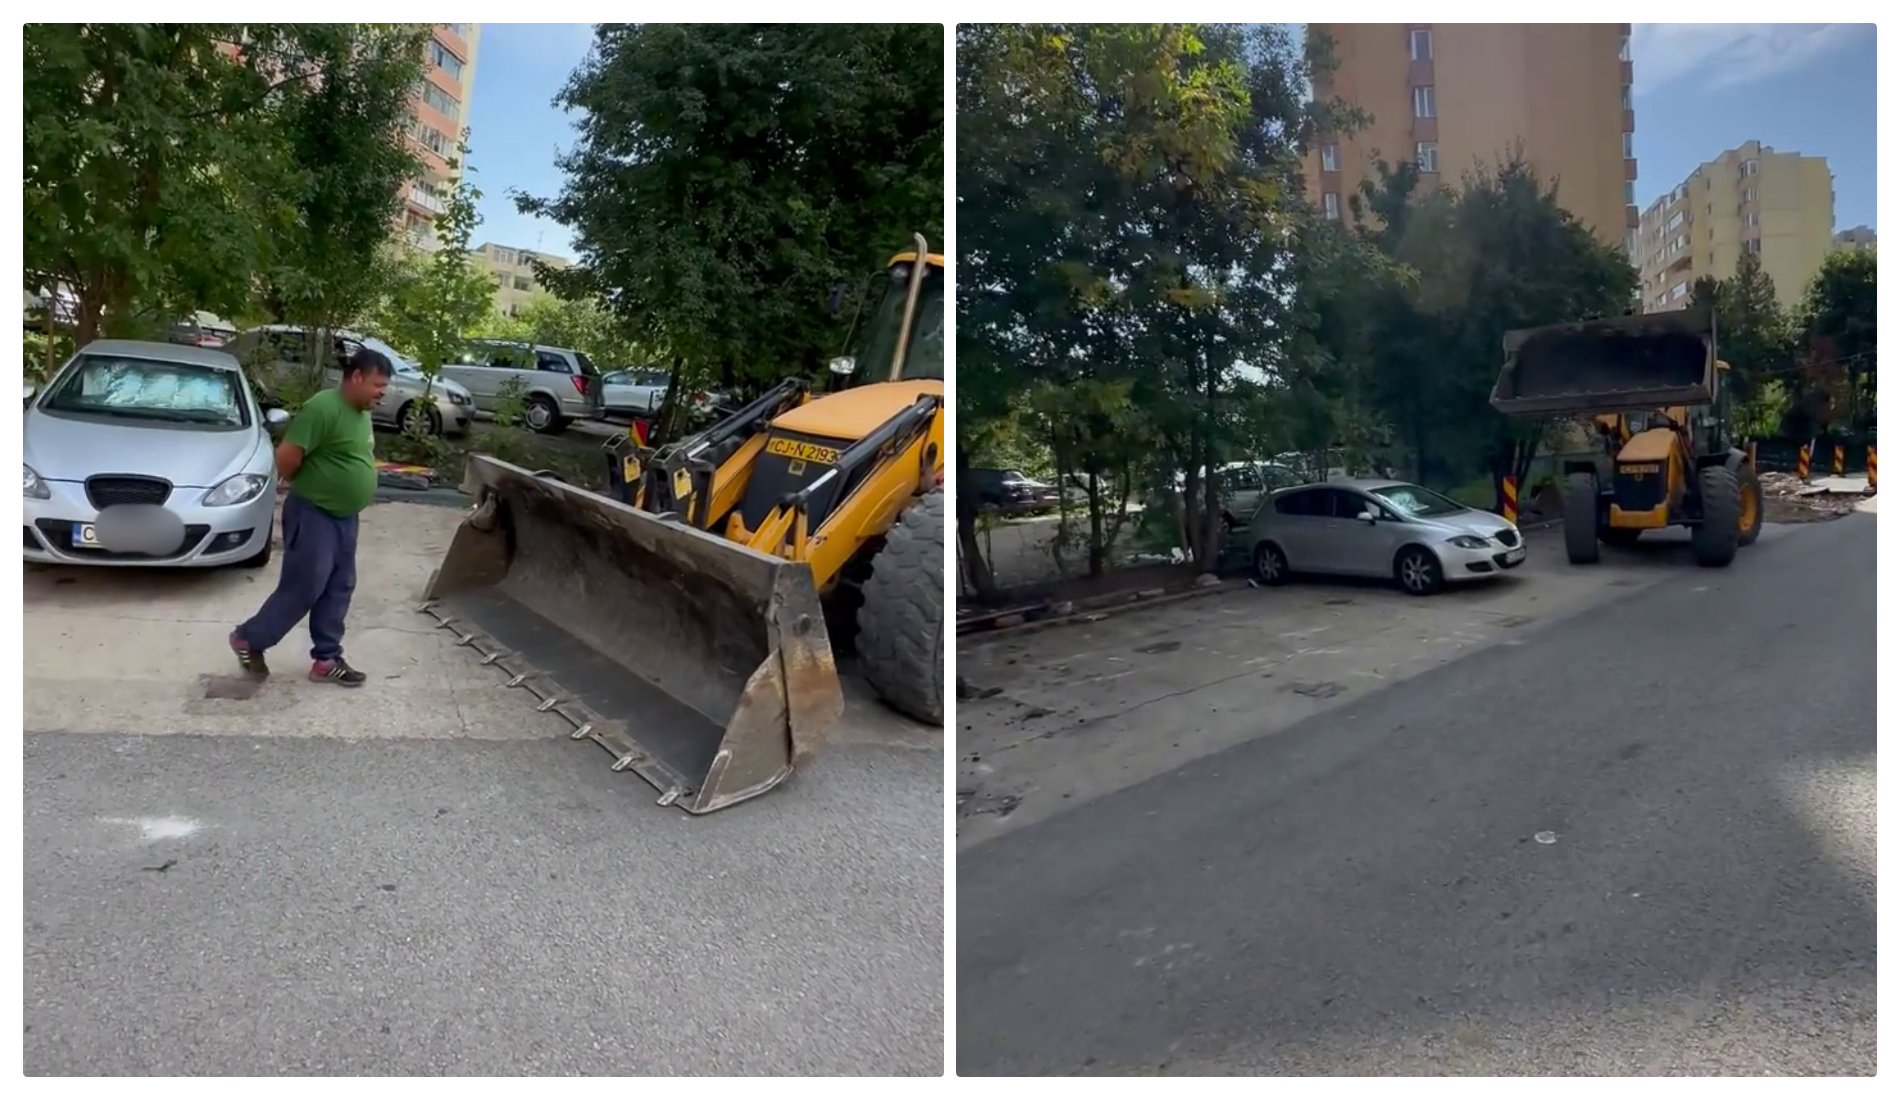 Cluj - Are dreptate? Un mănășturean refuză să elibereze parcarea și blochează asfaltarea, pentru că nu are unde muta mașina - VIDEO